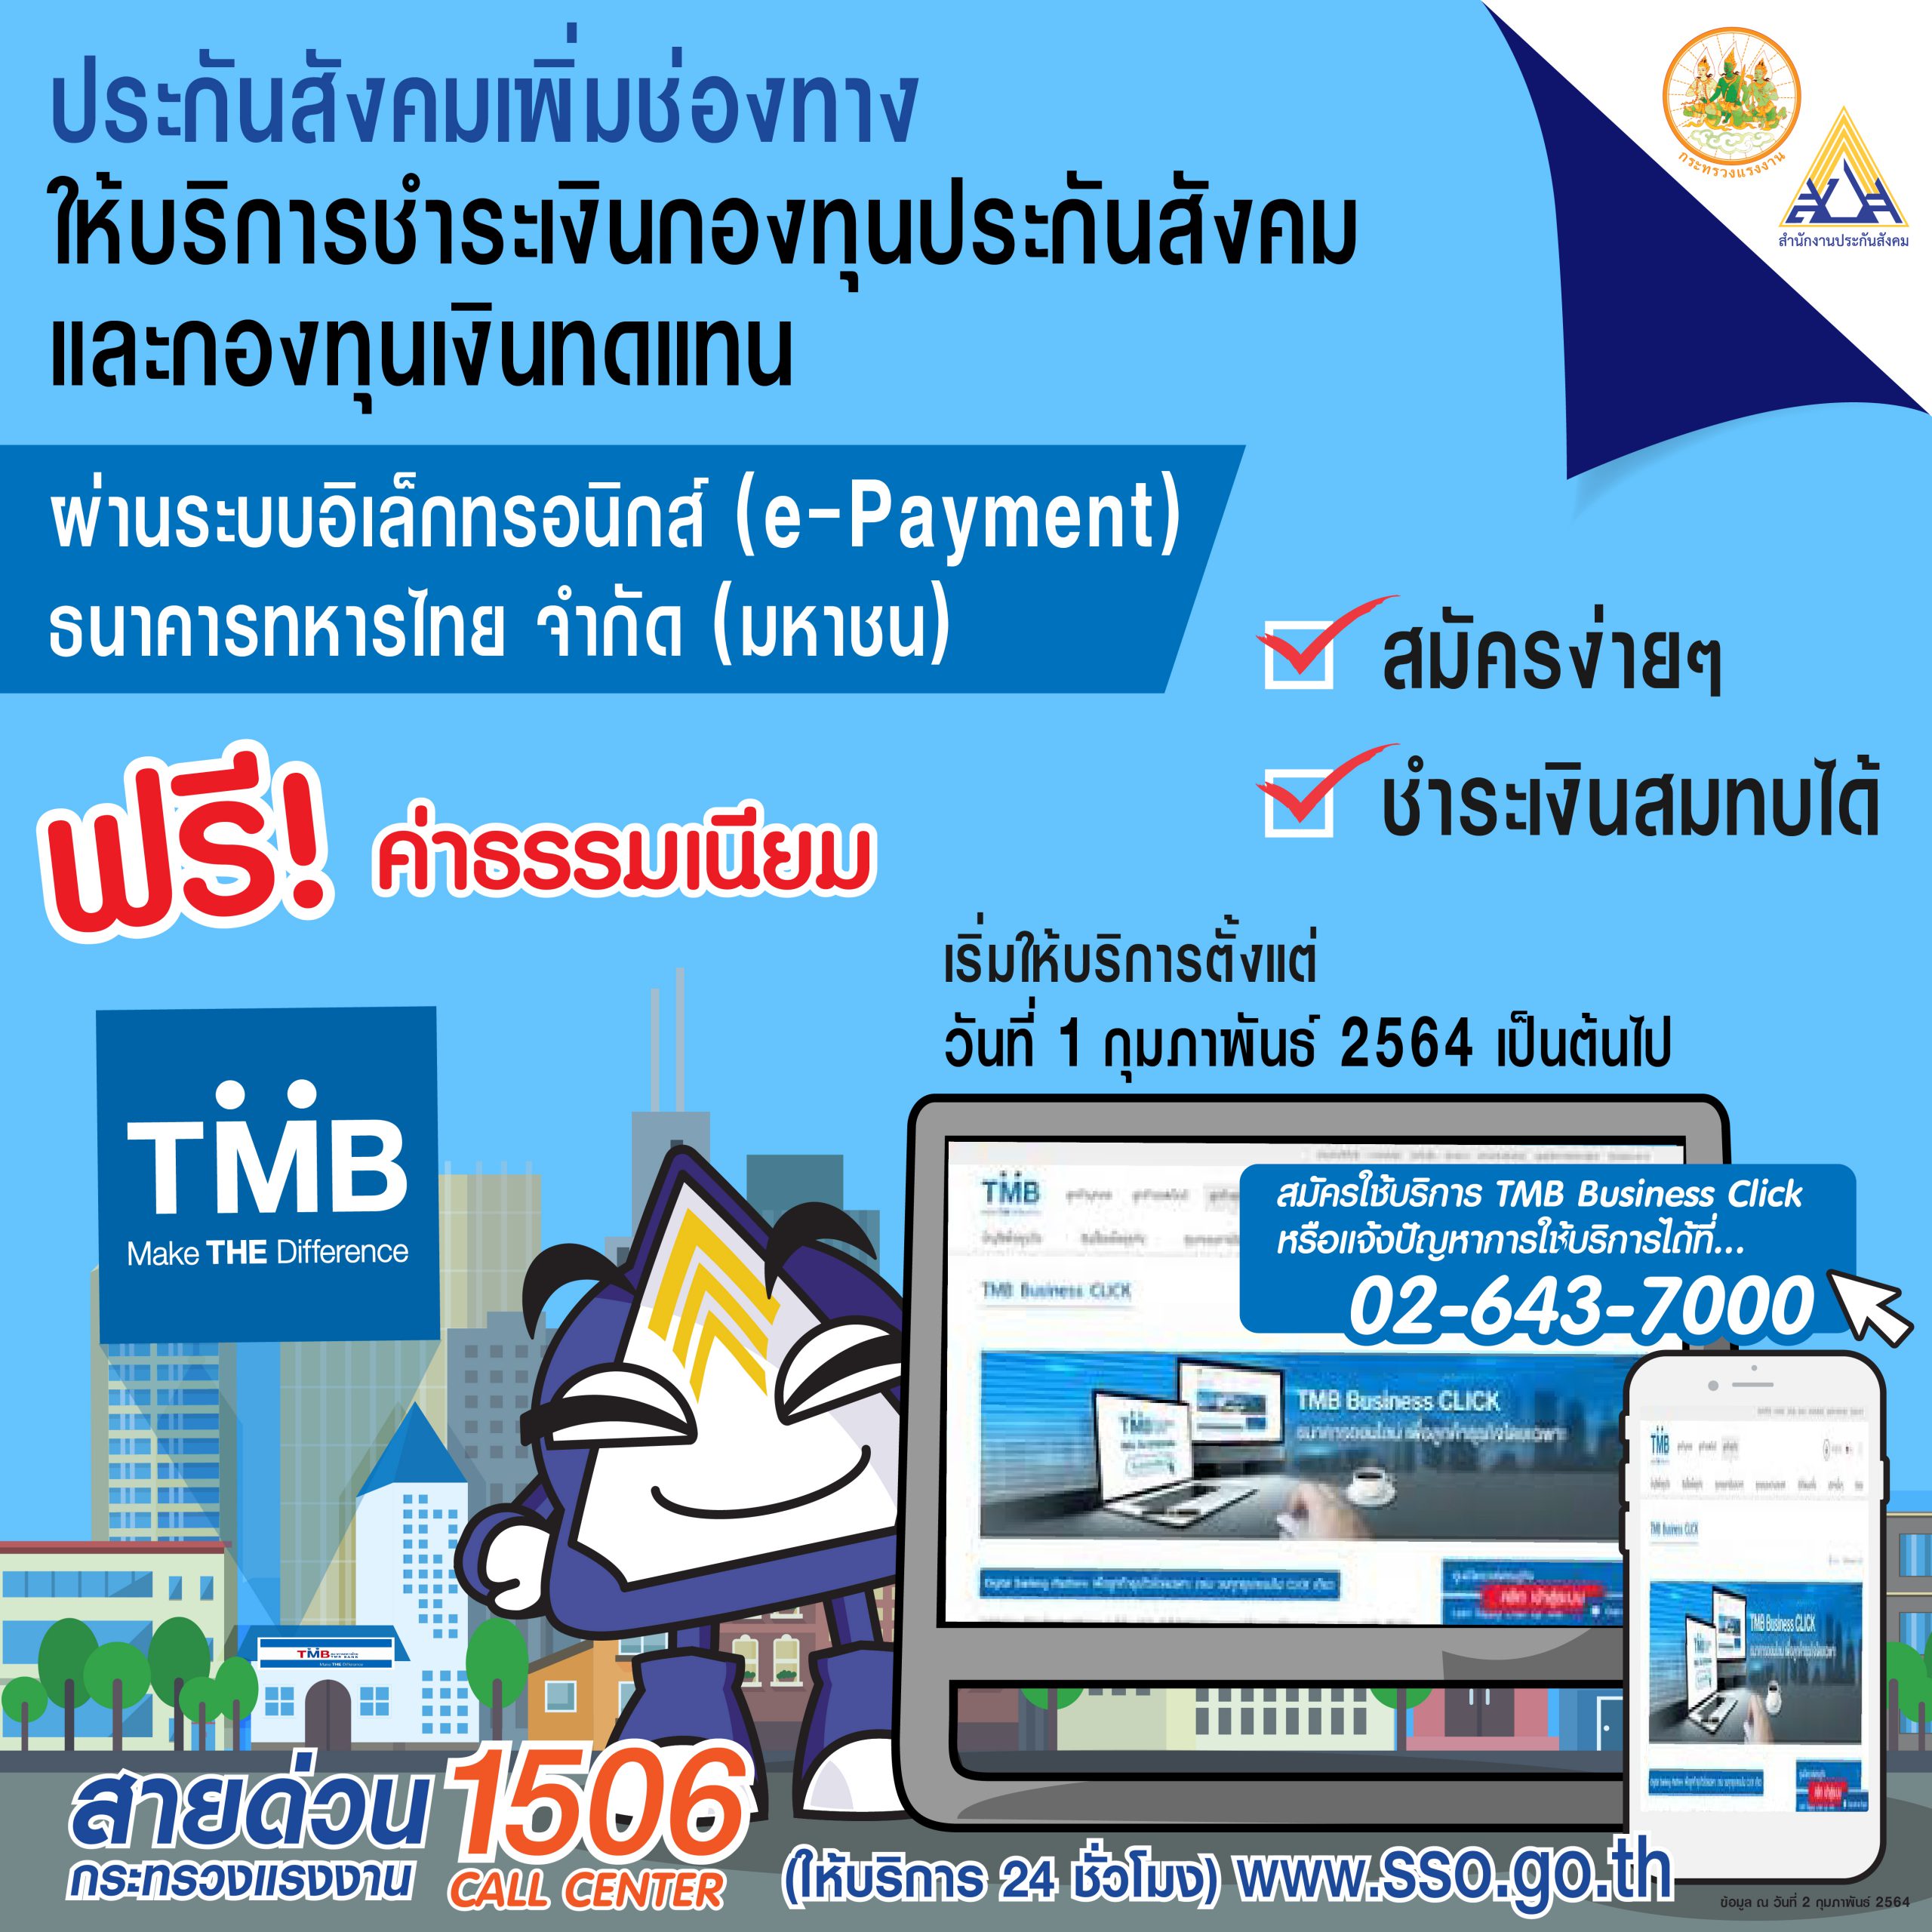 ประกันสังคม เพิ่มช่องทางรับชำระเงินสมทบ ผ่านระบบอิเล็กทรอนิกส์ (e-Payment) กับธนาคารทหารไทย